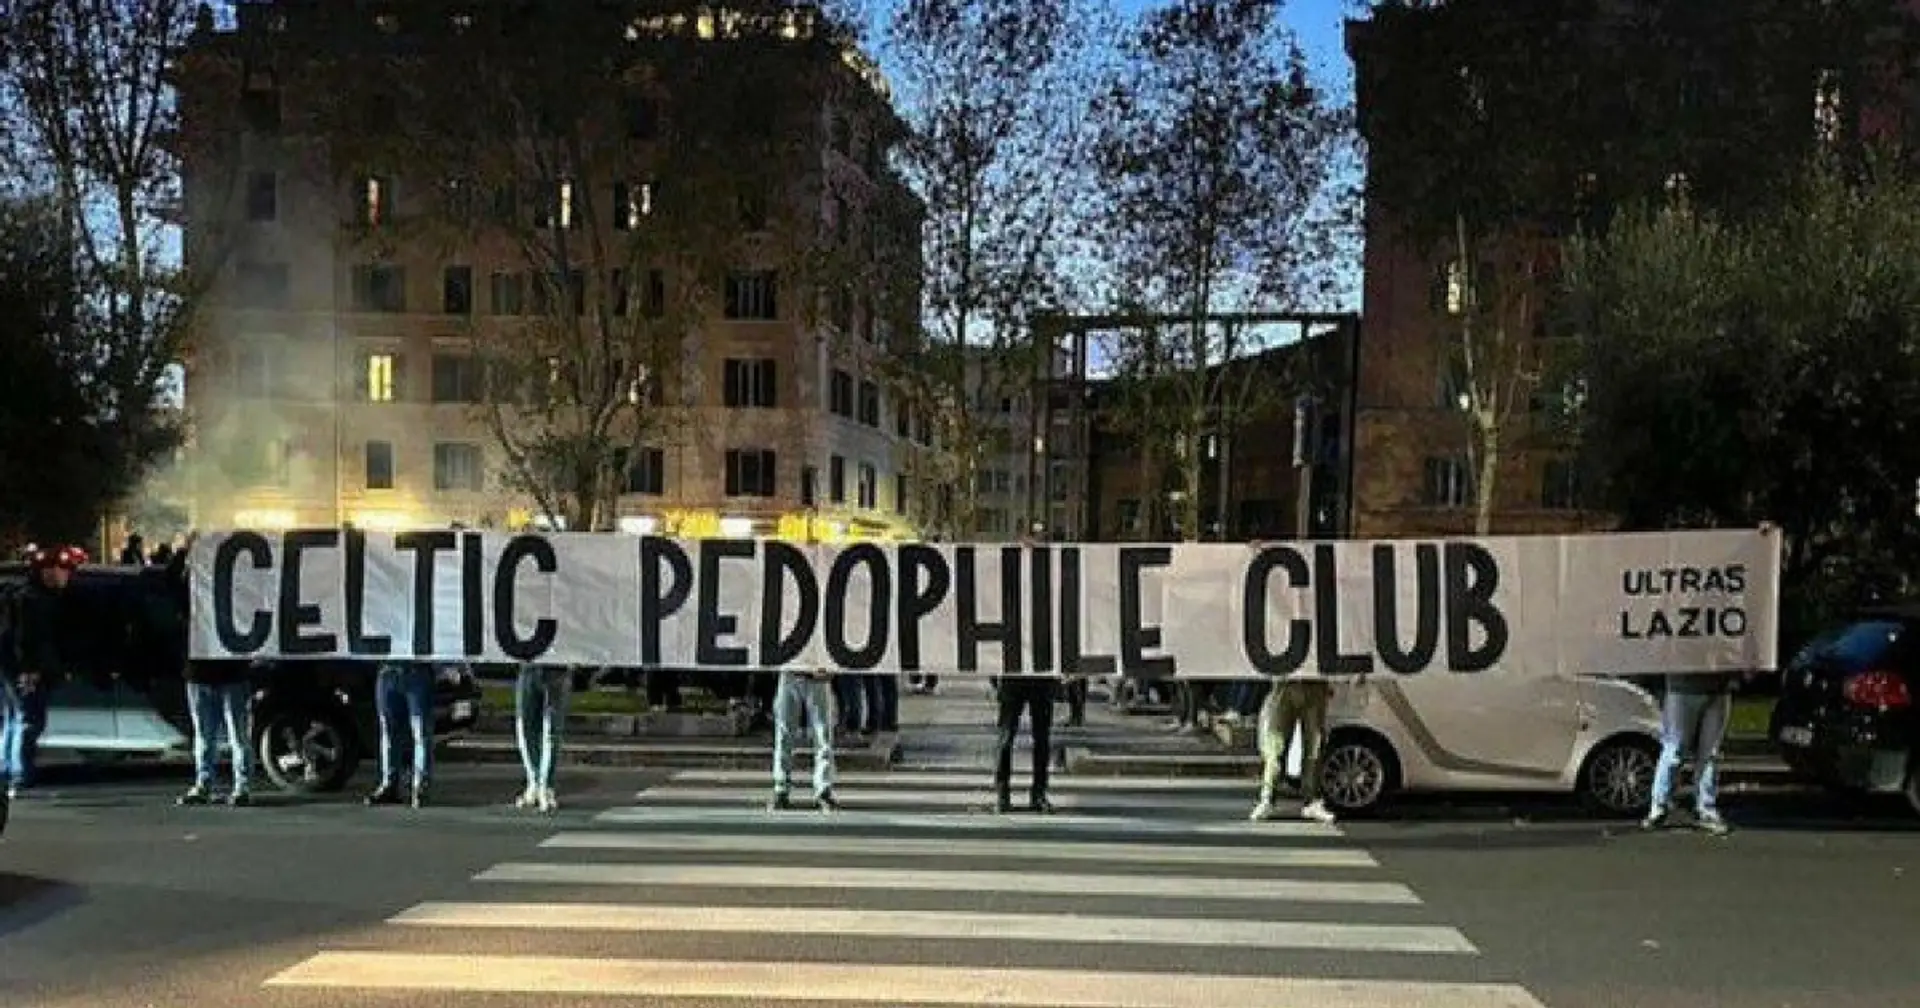 "Celtic ist ein pädophiler Verein": Die gruselige Geschichte hinter dem Lazio-Banner